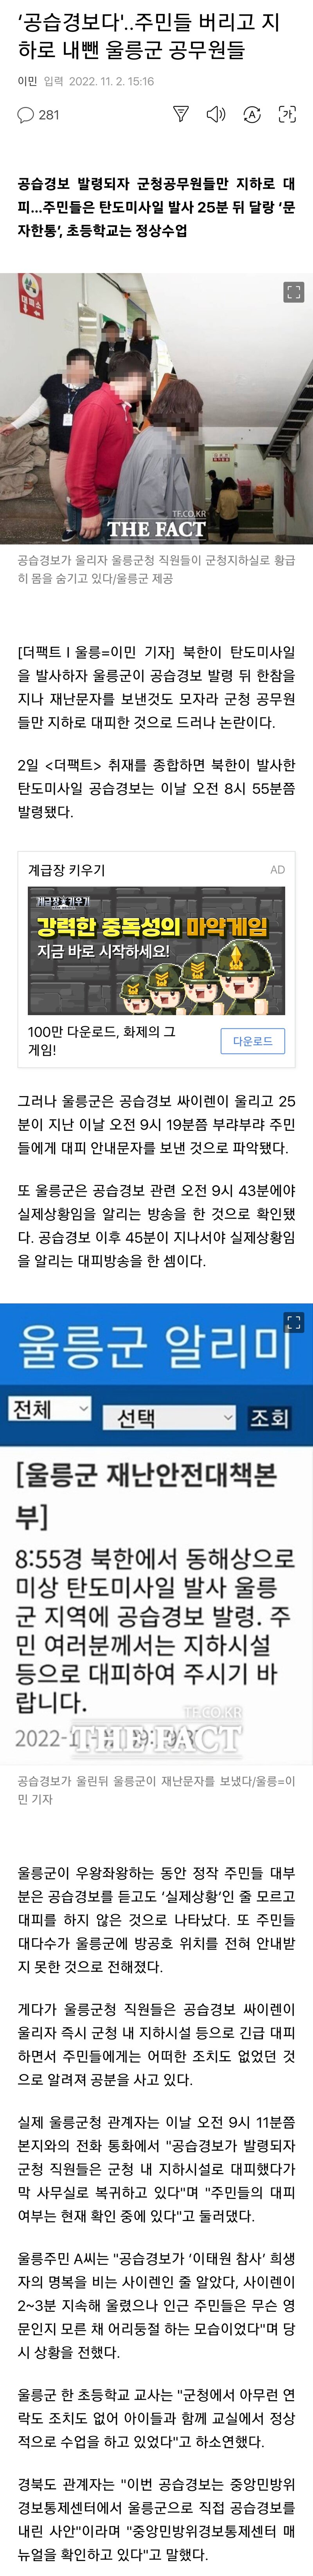 ‘공습경보다''..주민들 버리고 지하로 내뺀 울릉군 공무원들